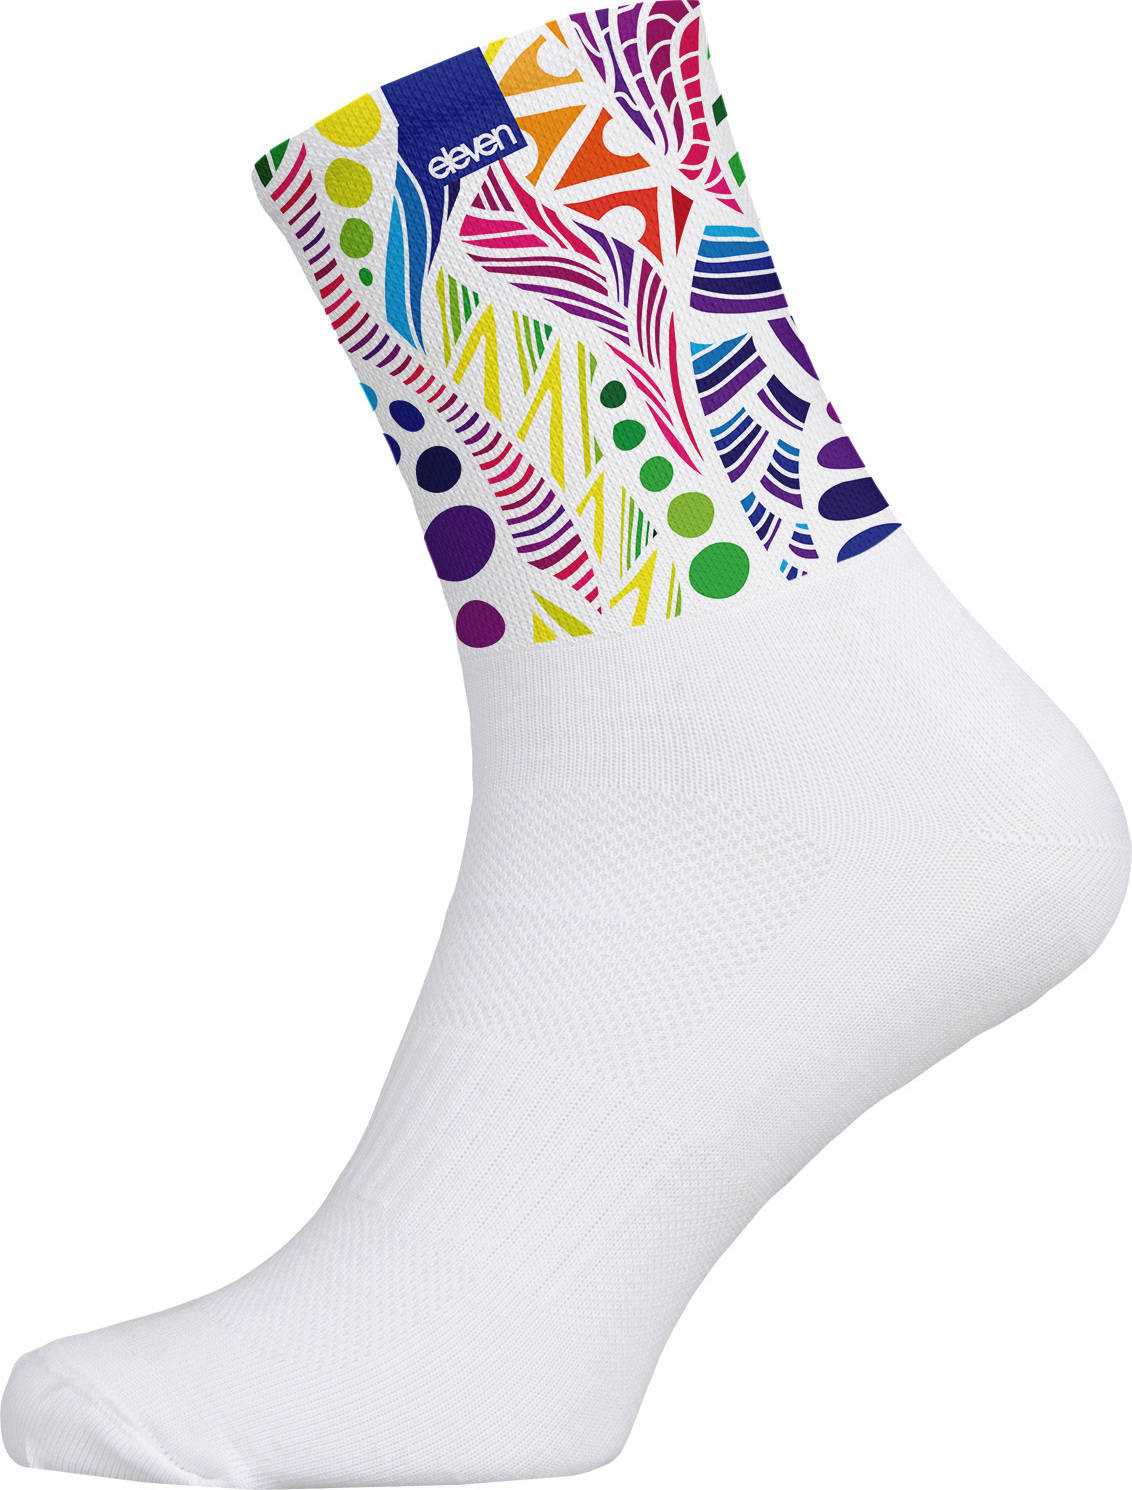 Ponožky ELEVEN Cuba Wildtwist bílé Velikost: M (39-41)